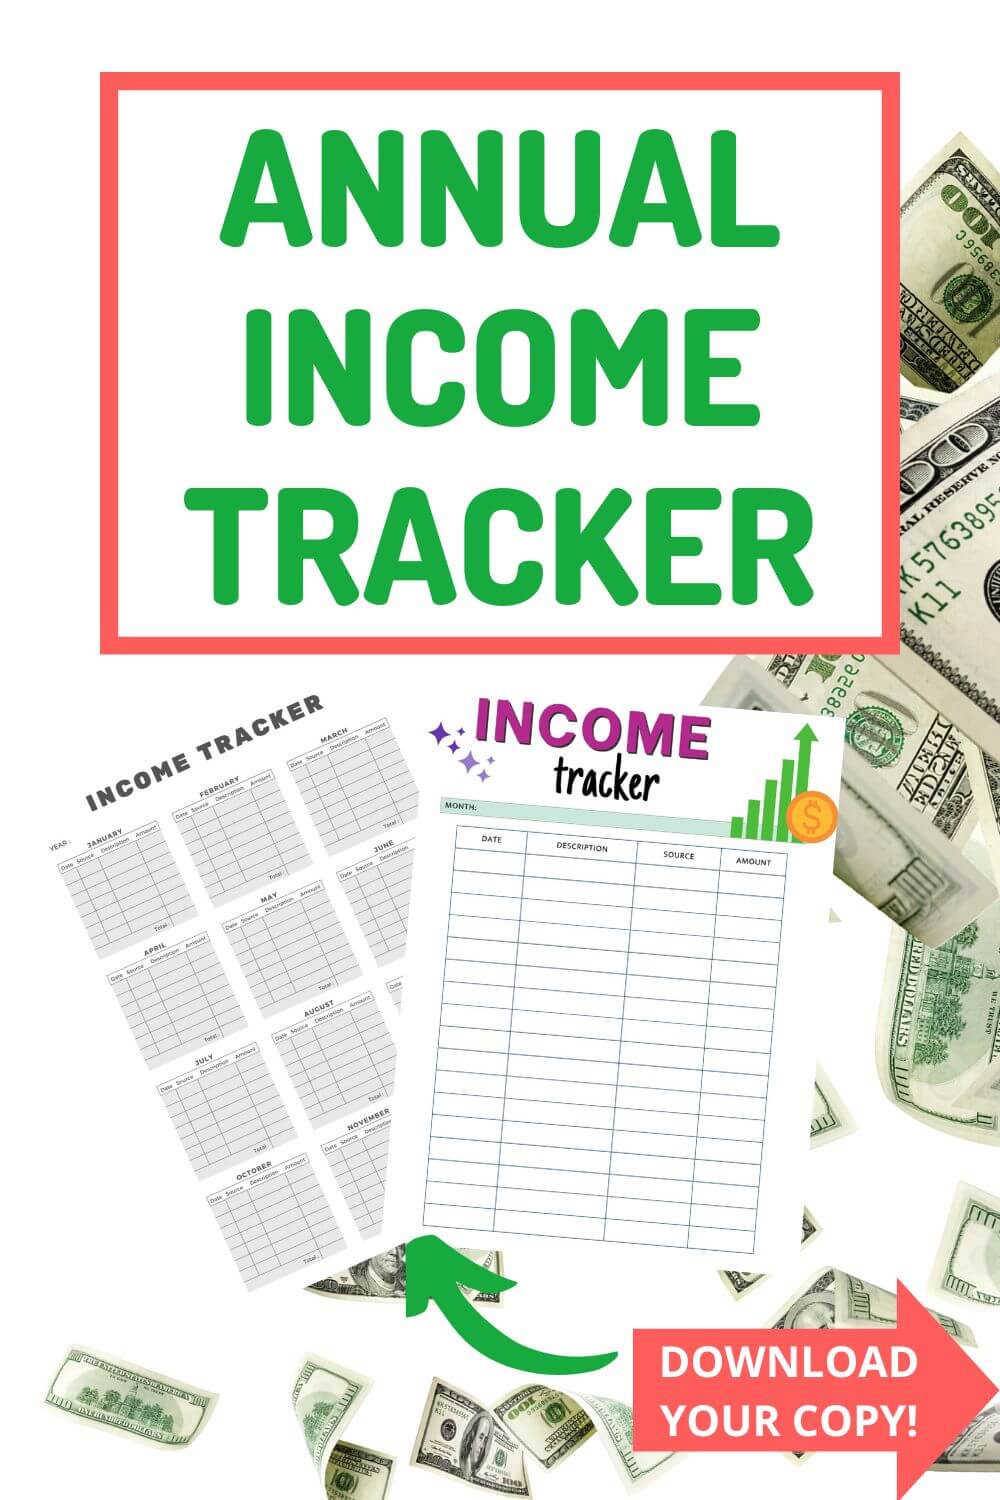 Annual Income Tracker